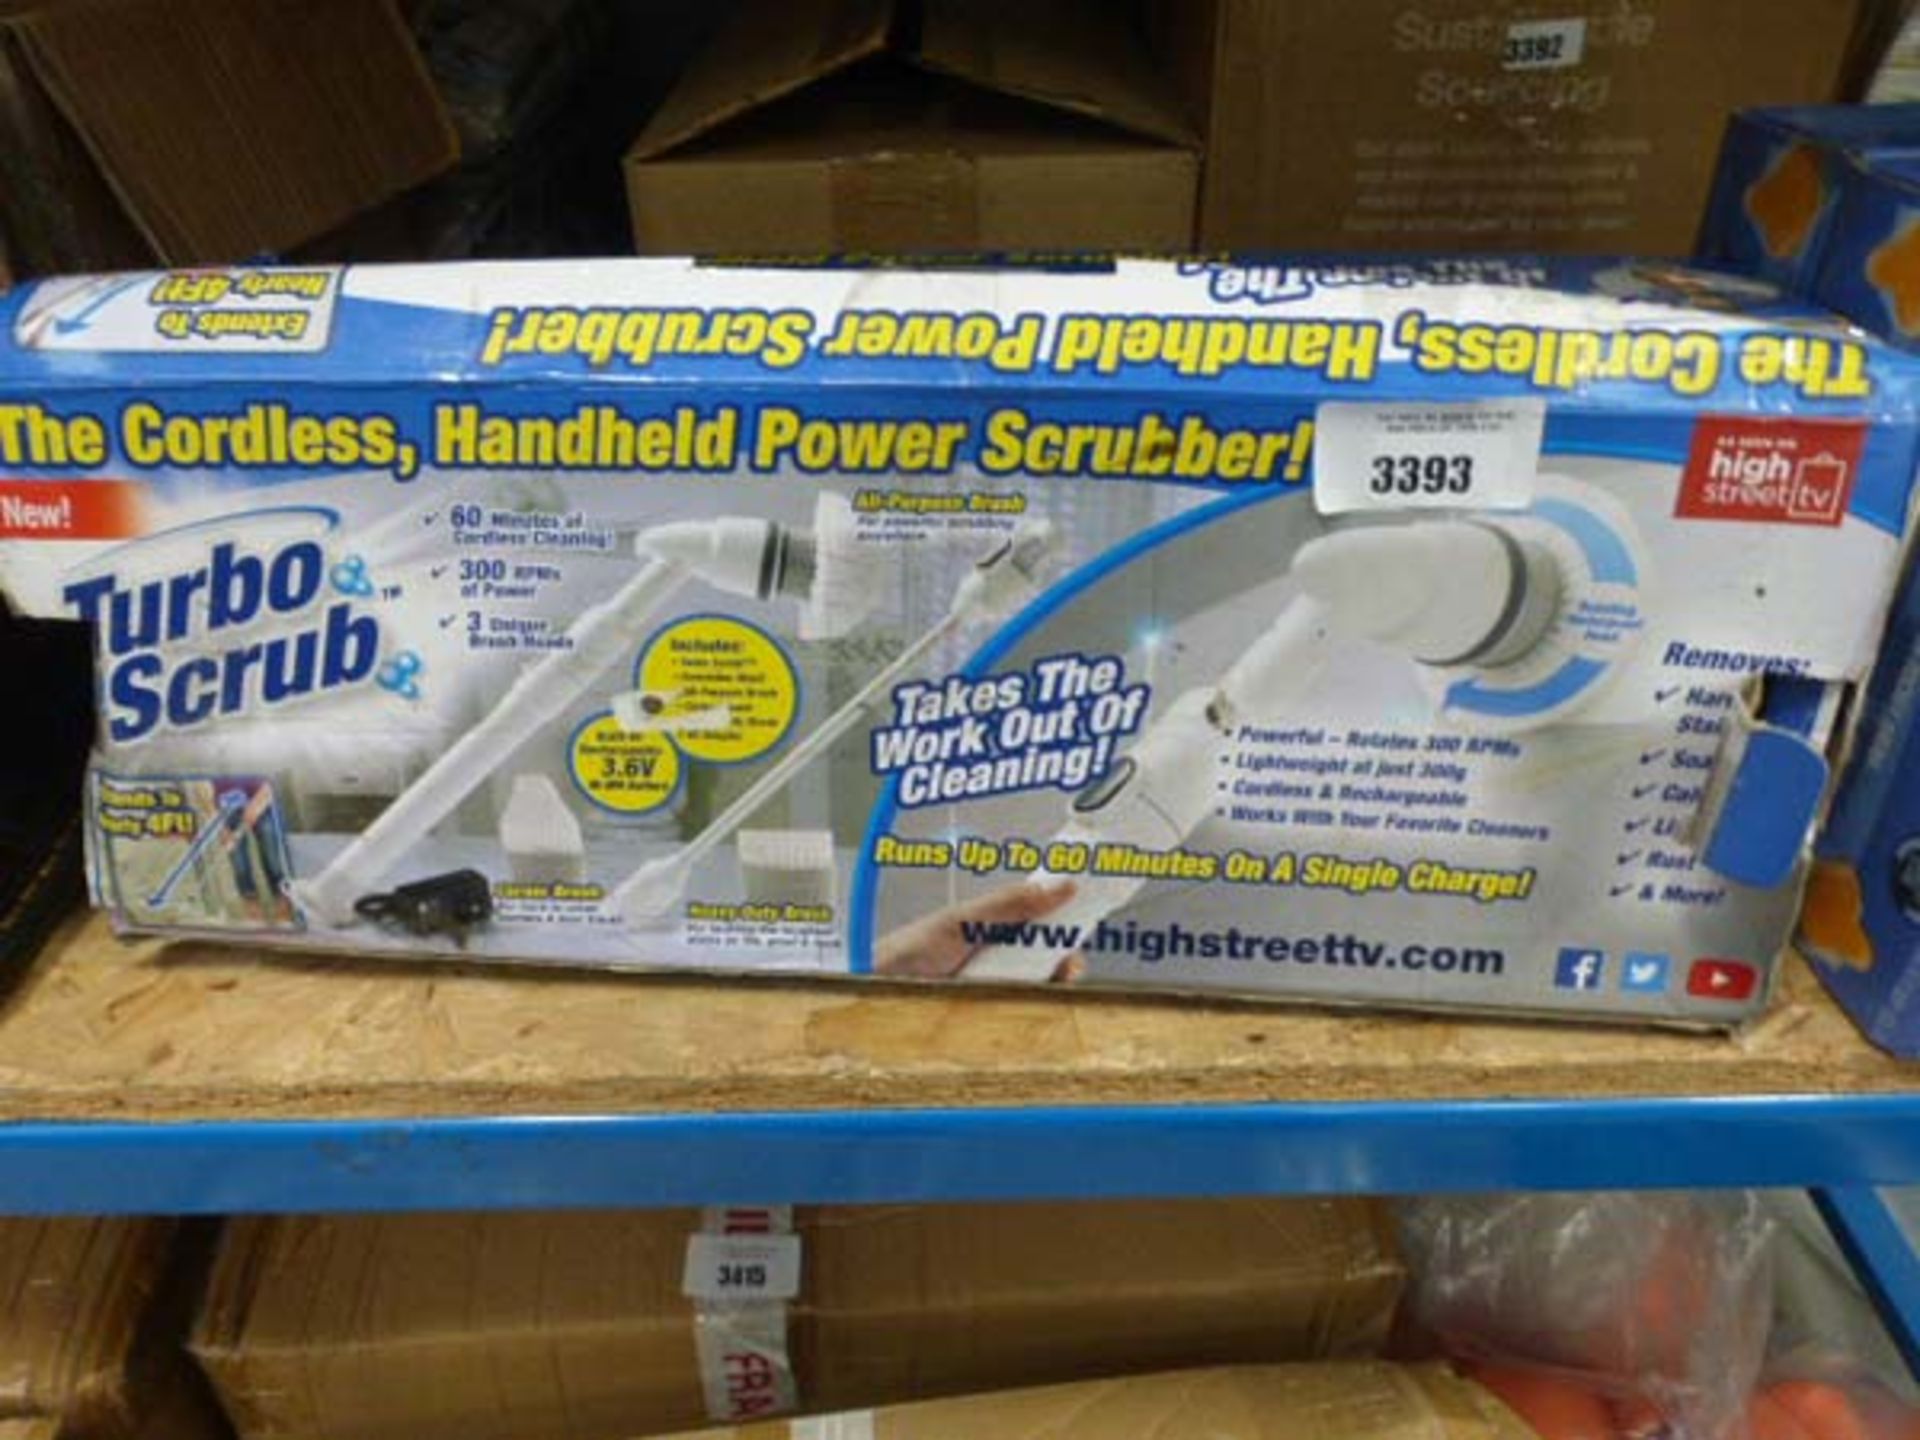 2 turbo scrub handheld power scrubbers